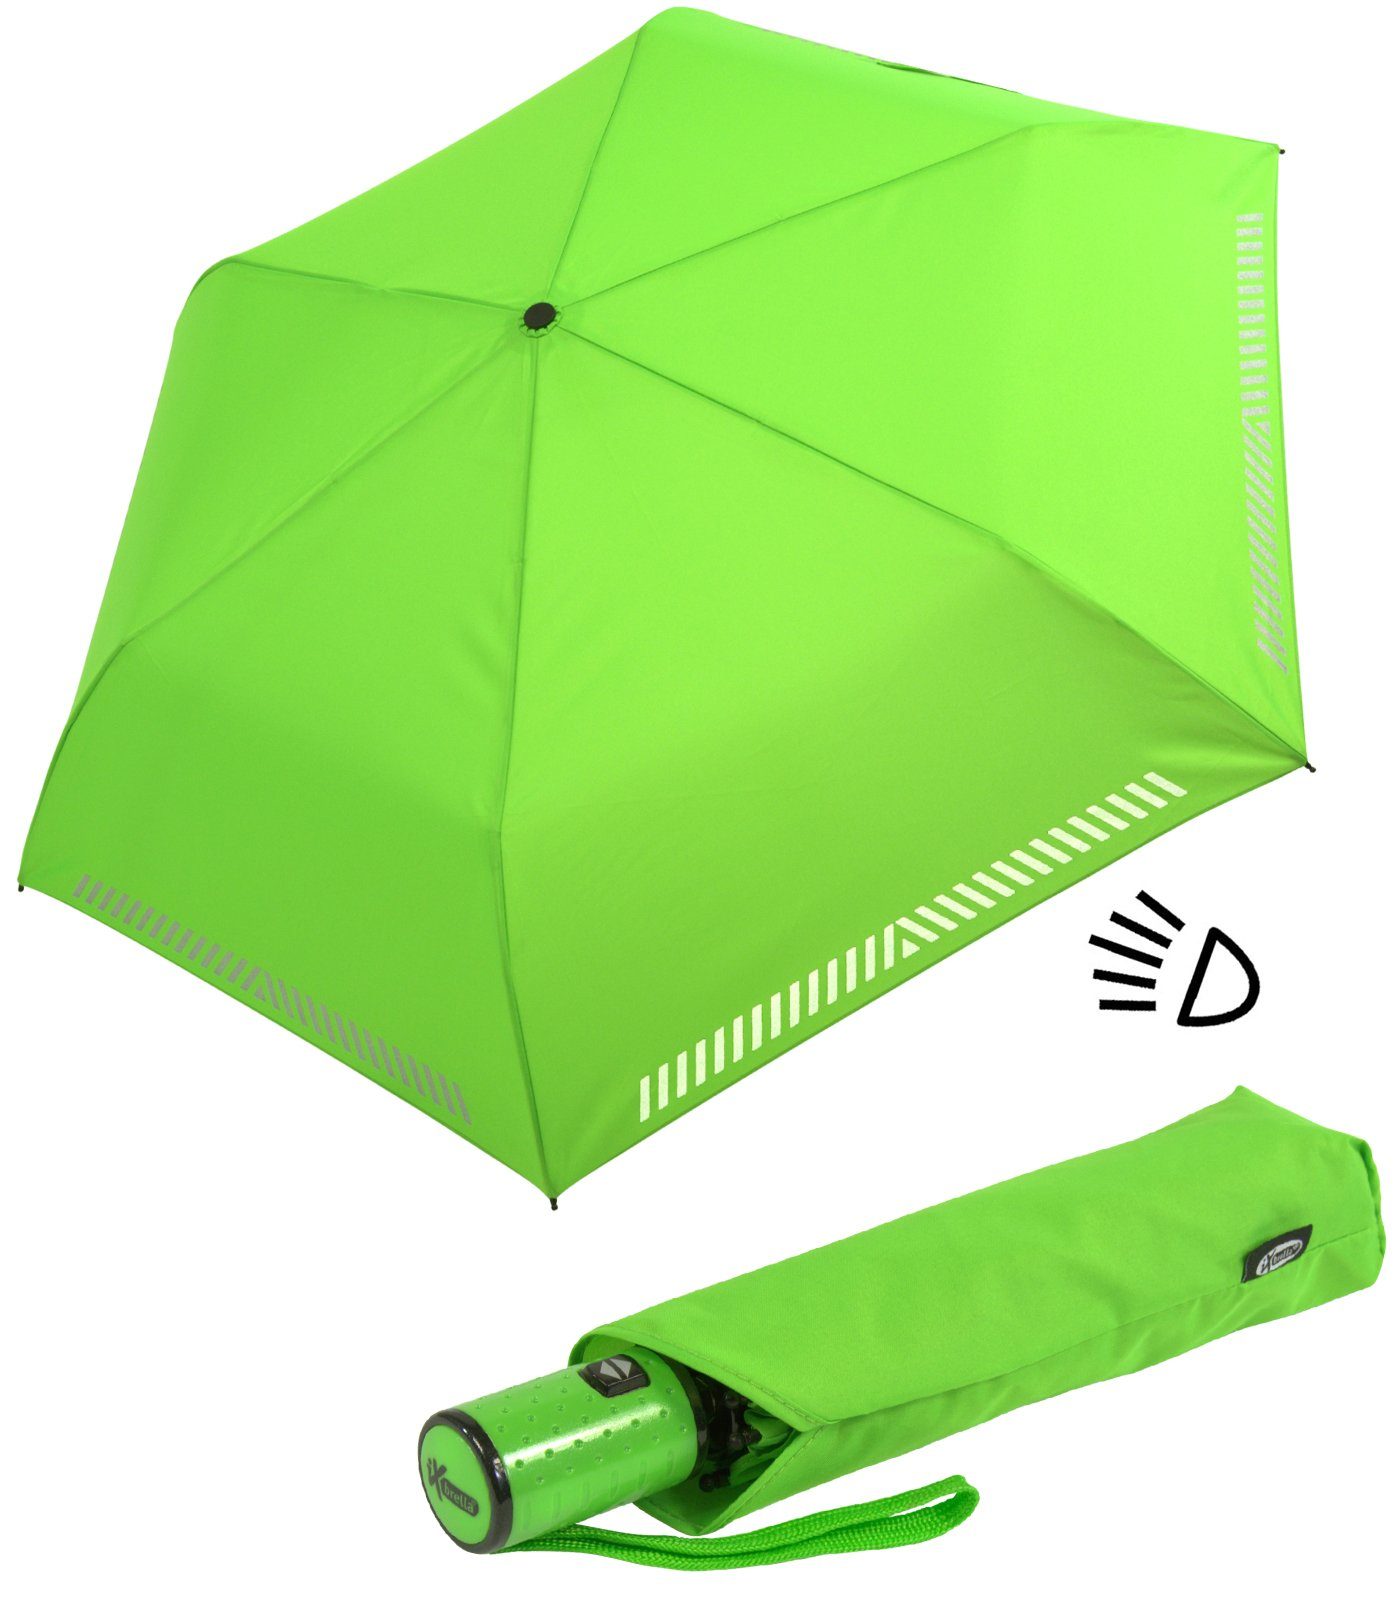 iX-brella Taschenregenschirm Kinderschirm mit Auf-Zu-Automatik, reflektierend, Sicherheit durch Reflex-Streifen - neon grün